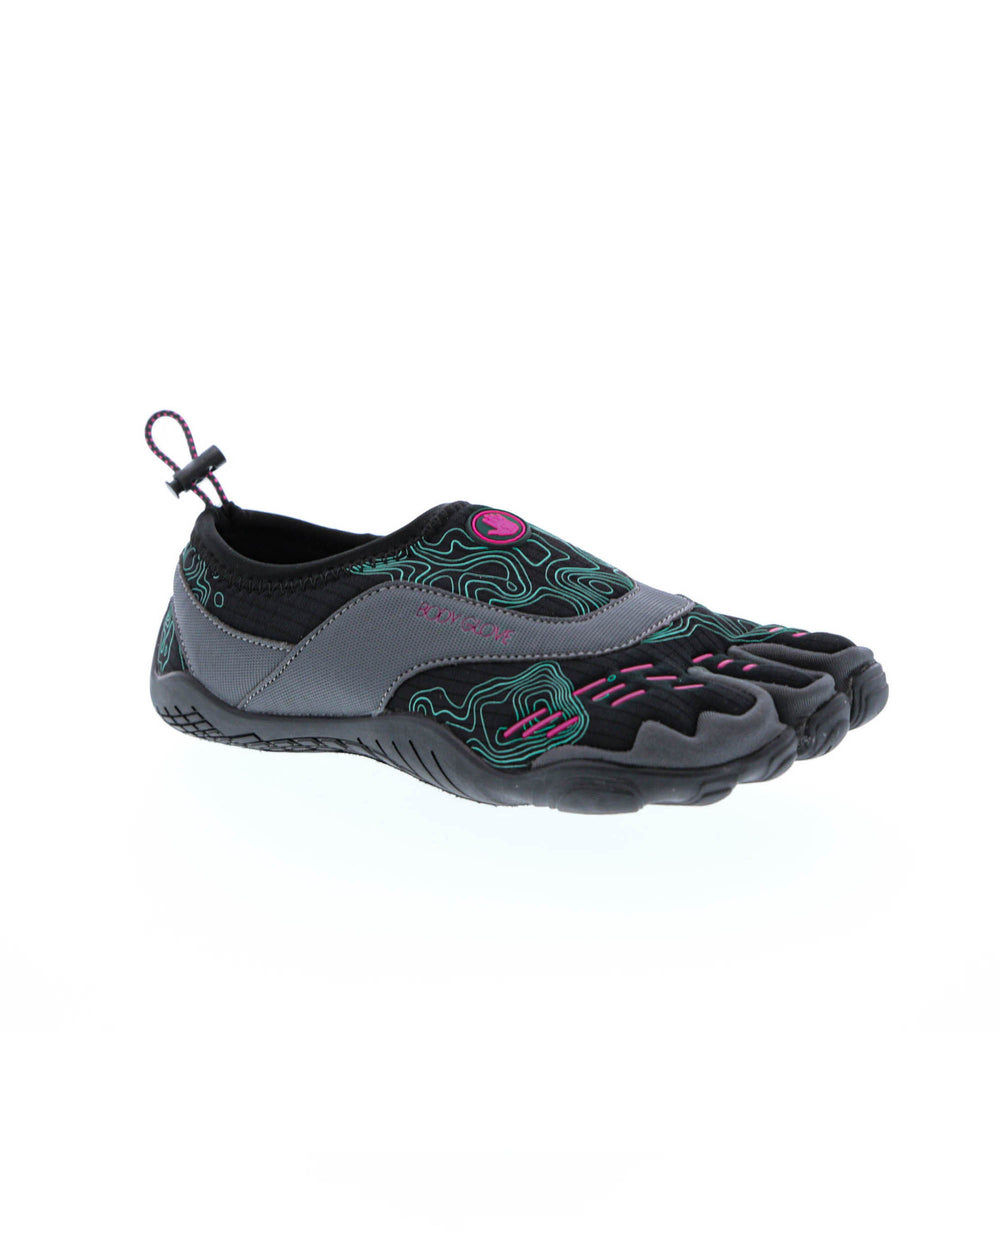 Women's 3T Barefoot Cinch Water Shoes - Black/Fuschia